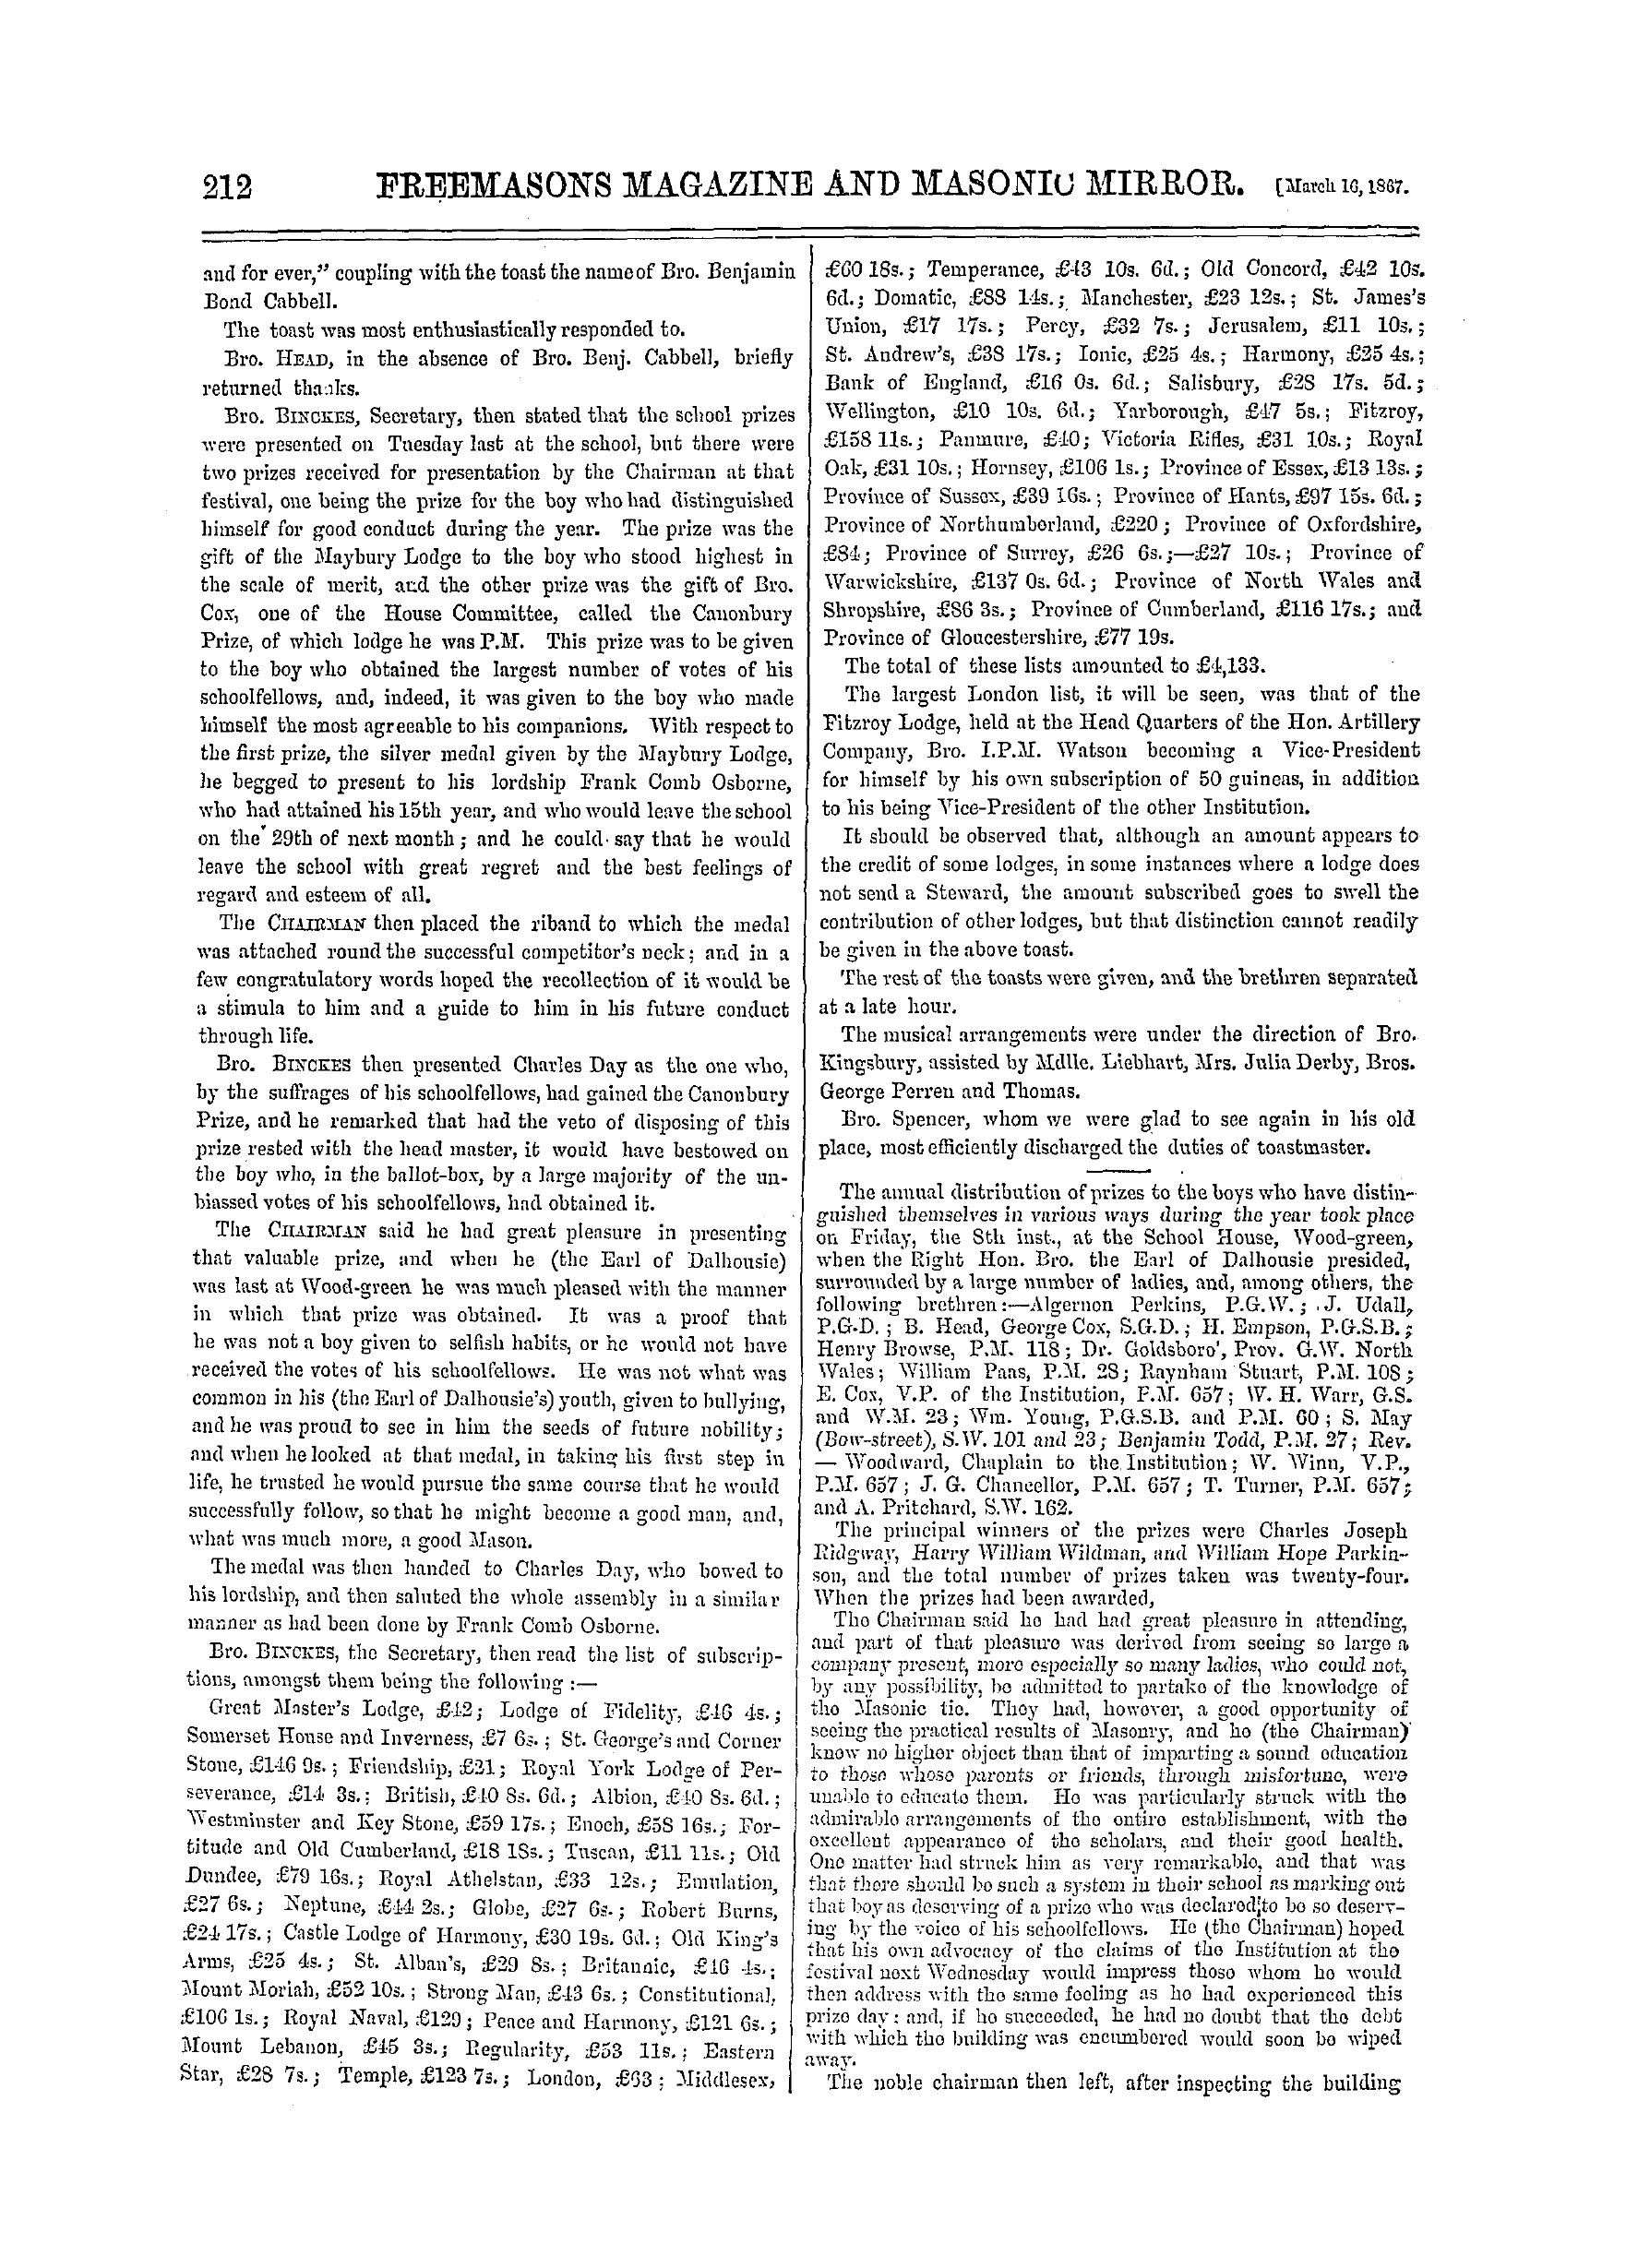 The Freemasons' Monthly Magazine: 1867-03-16 - Masonic Mem.